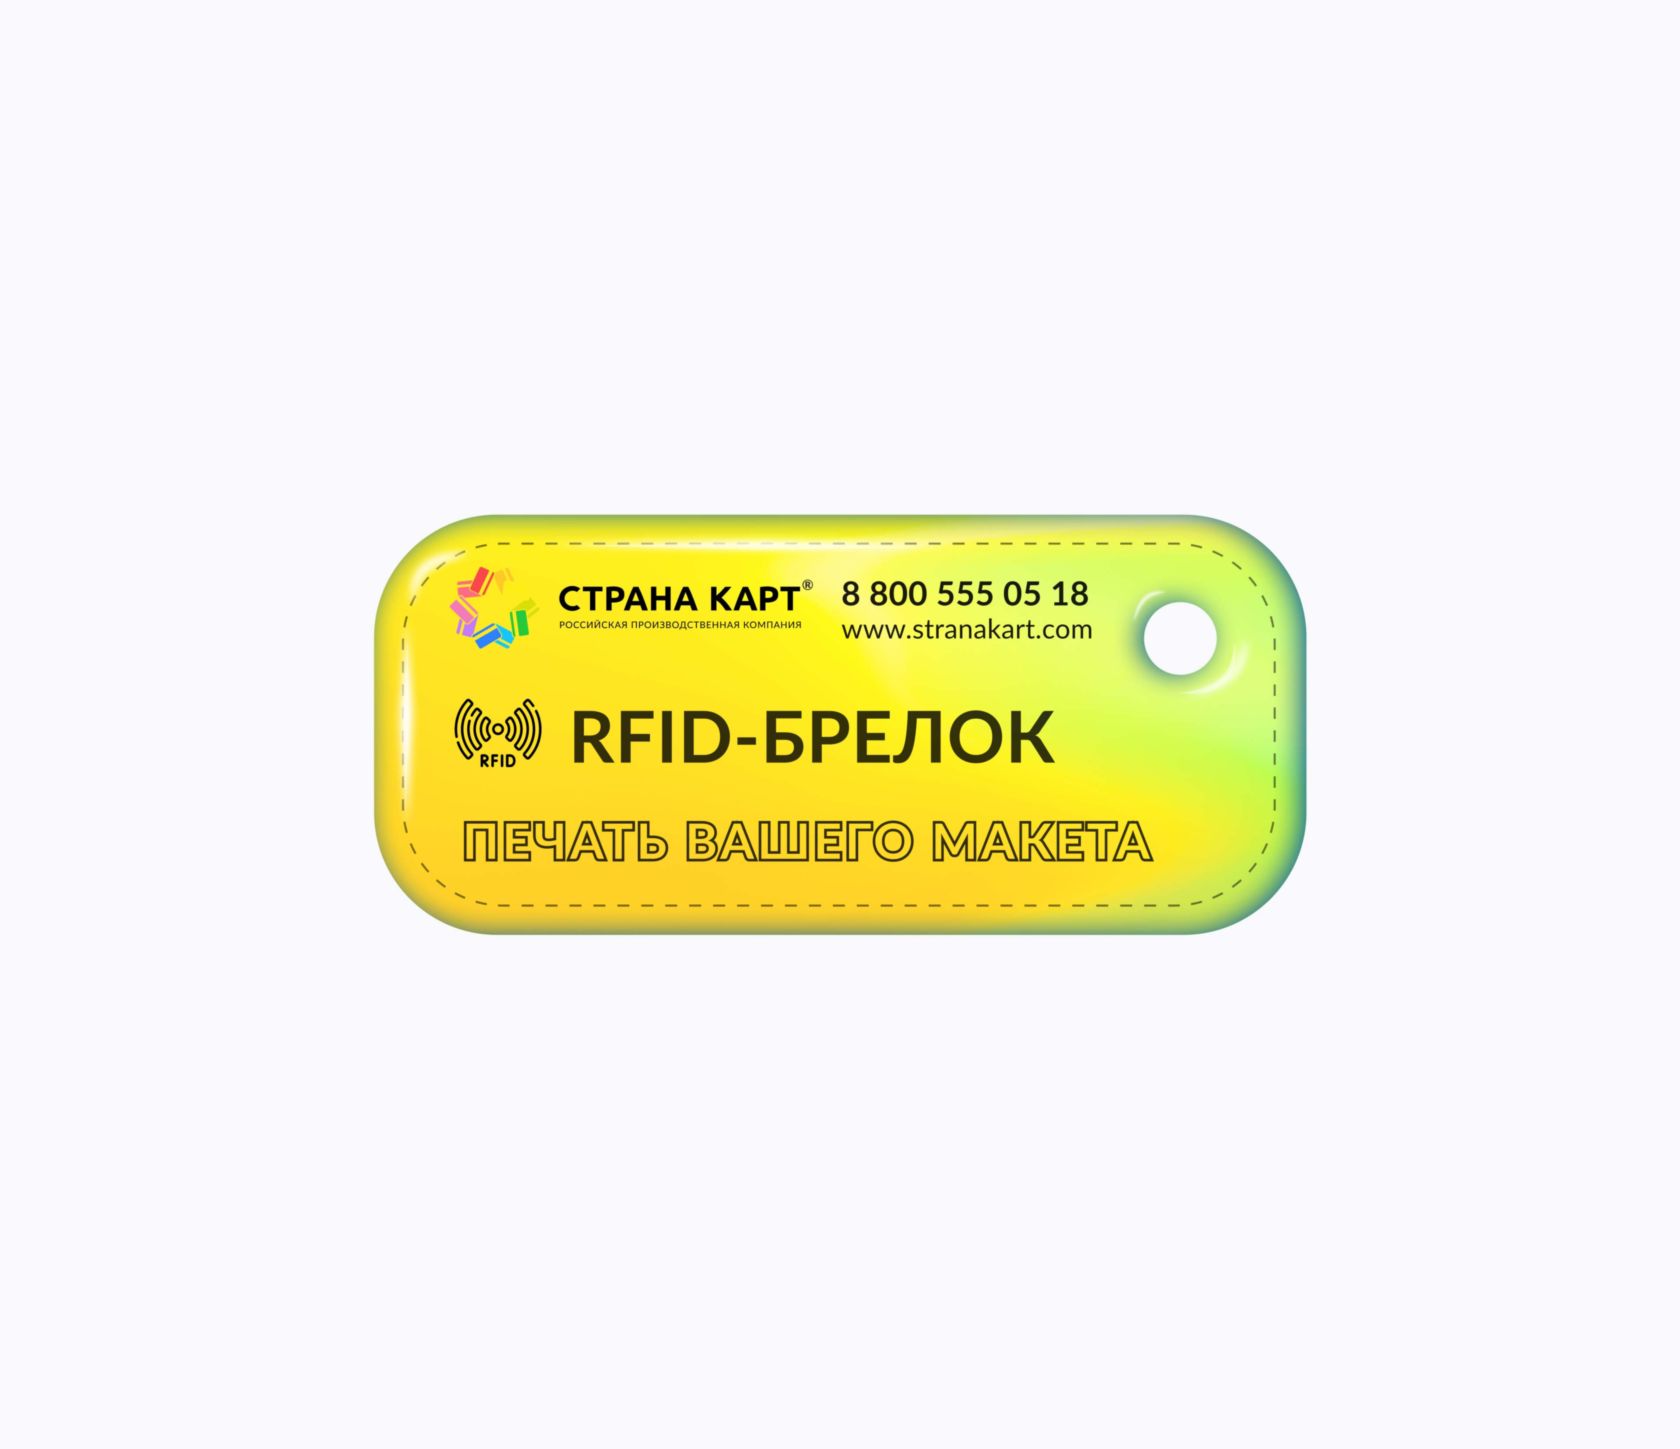 Прямоугольные Мини топливные RFID-брелоки NEOKEY® с чипом для АЗС Топливные RFID-брелоки NEOKEY® с чипом для АЗС